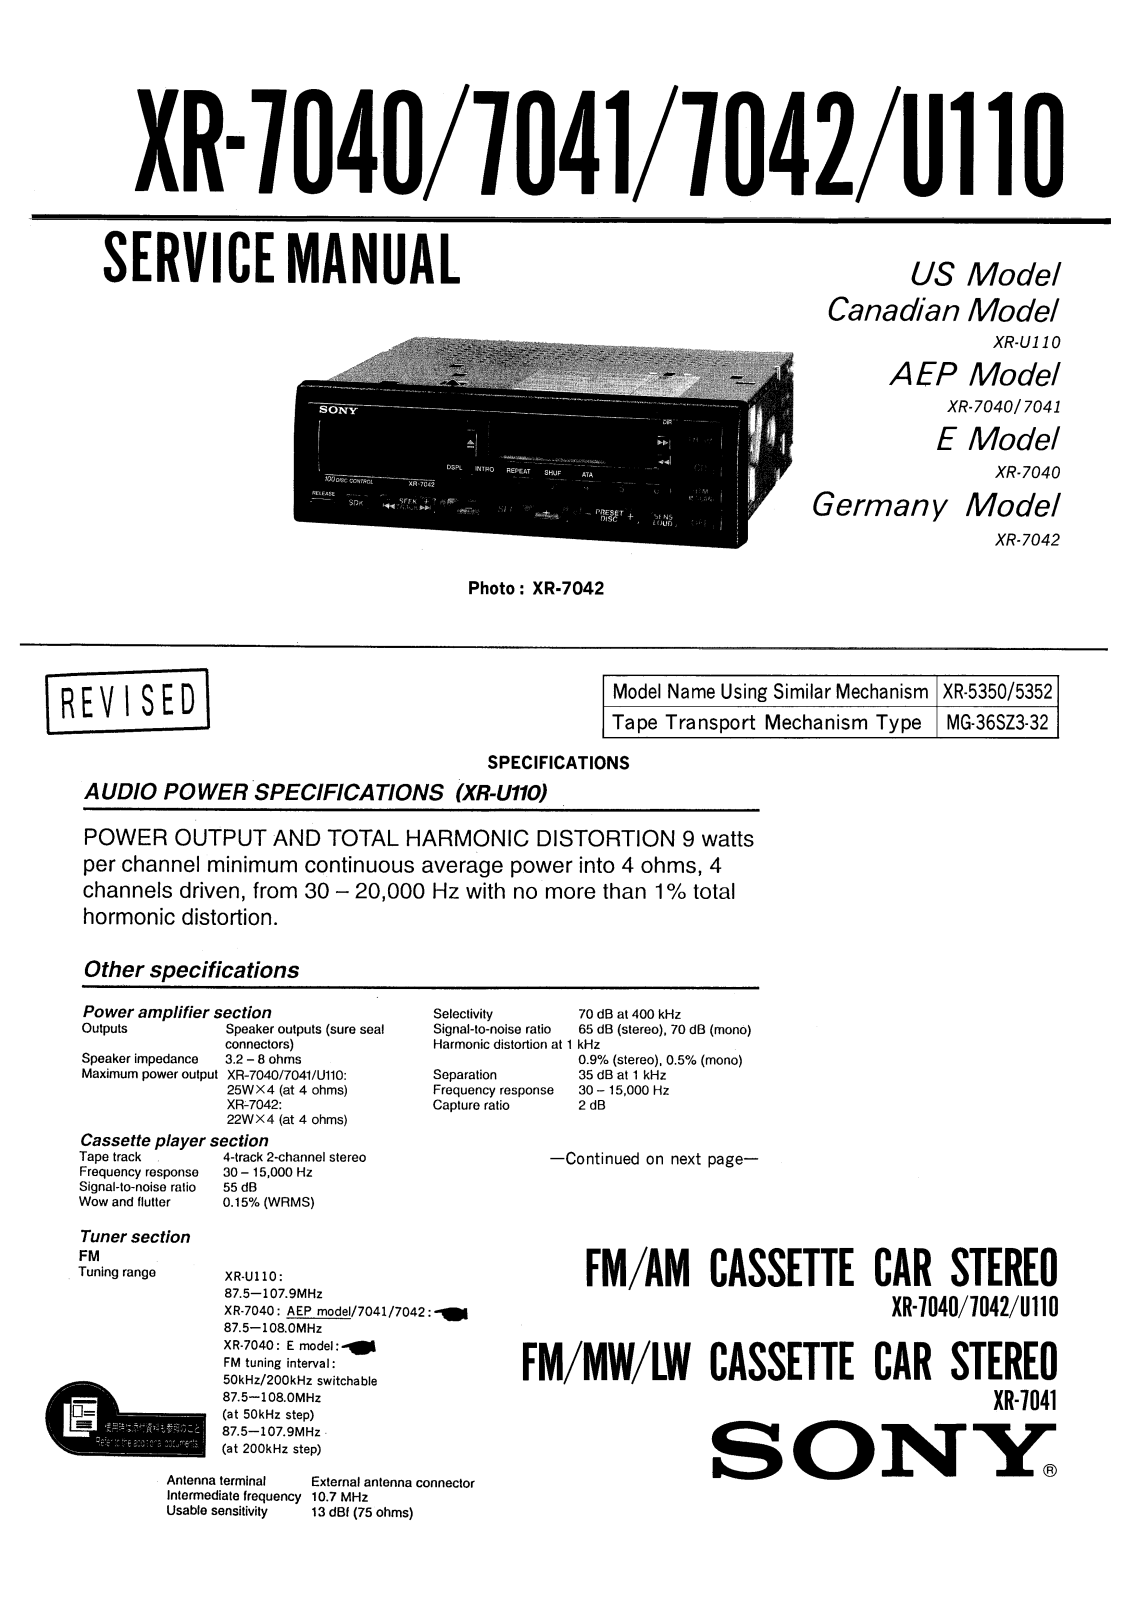 SONY XR-7040, XR-7041, XR-7042, XR-U110 Service Manual